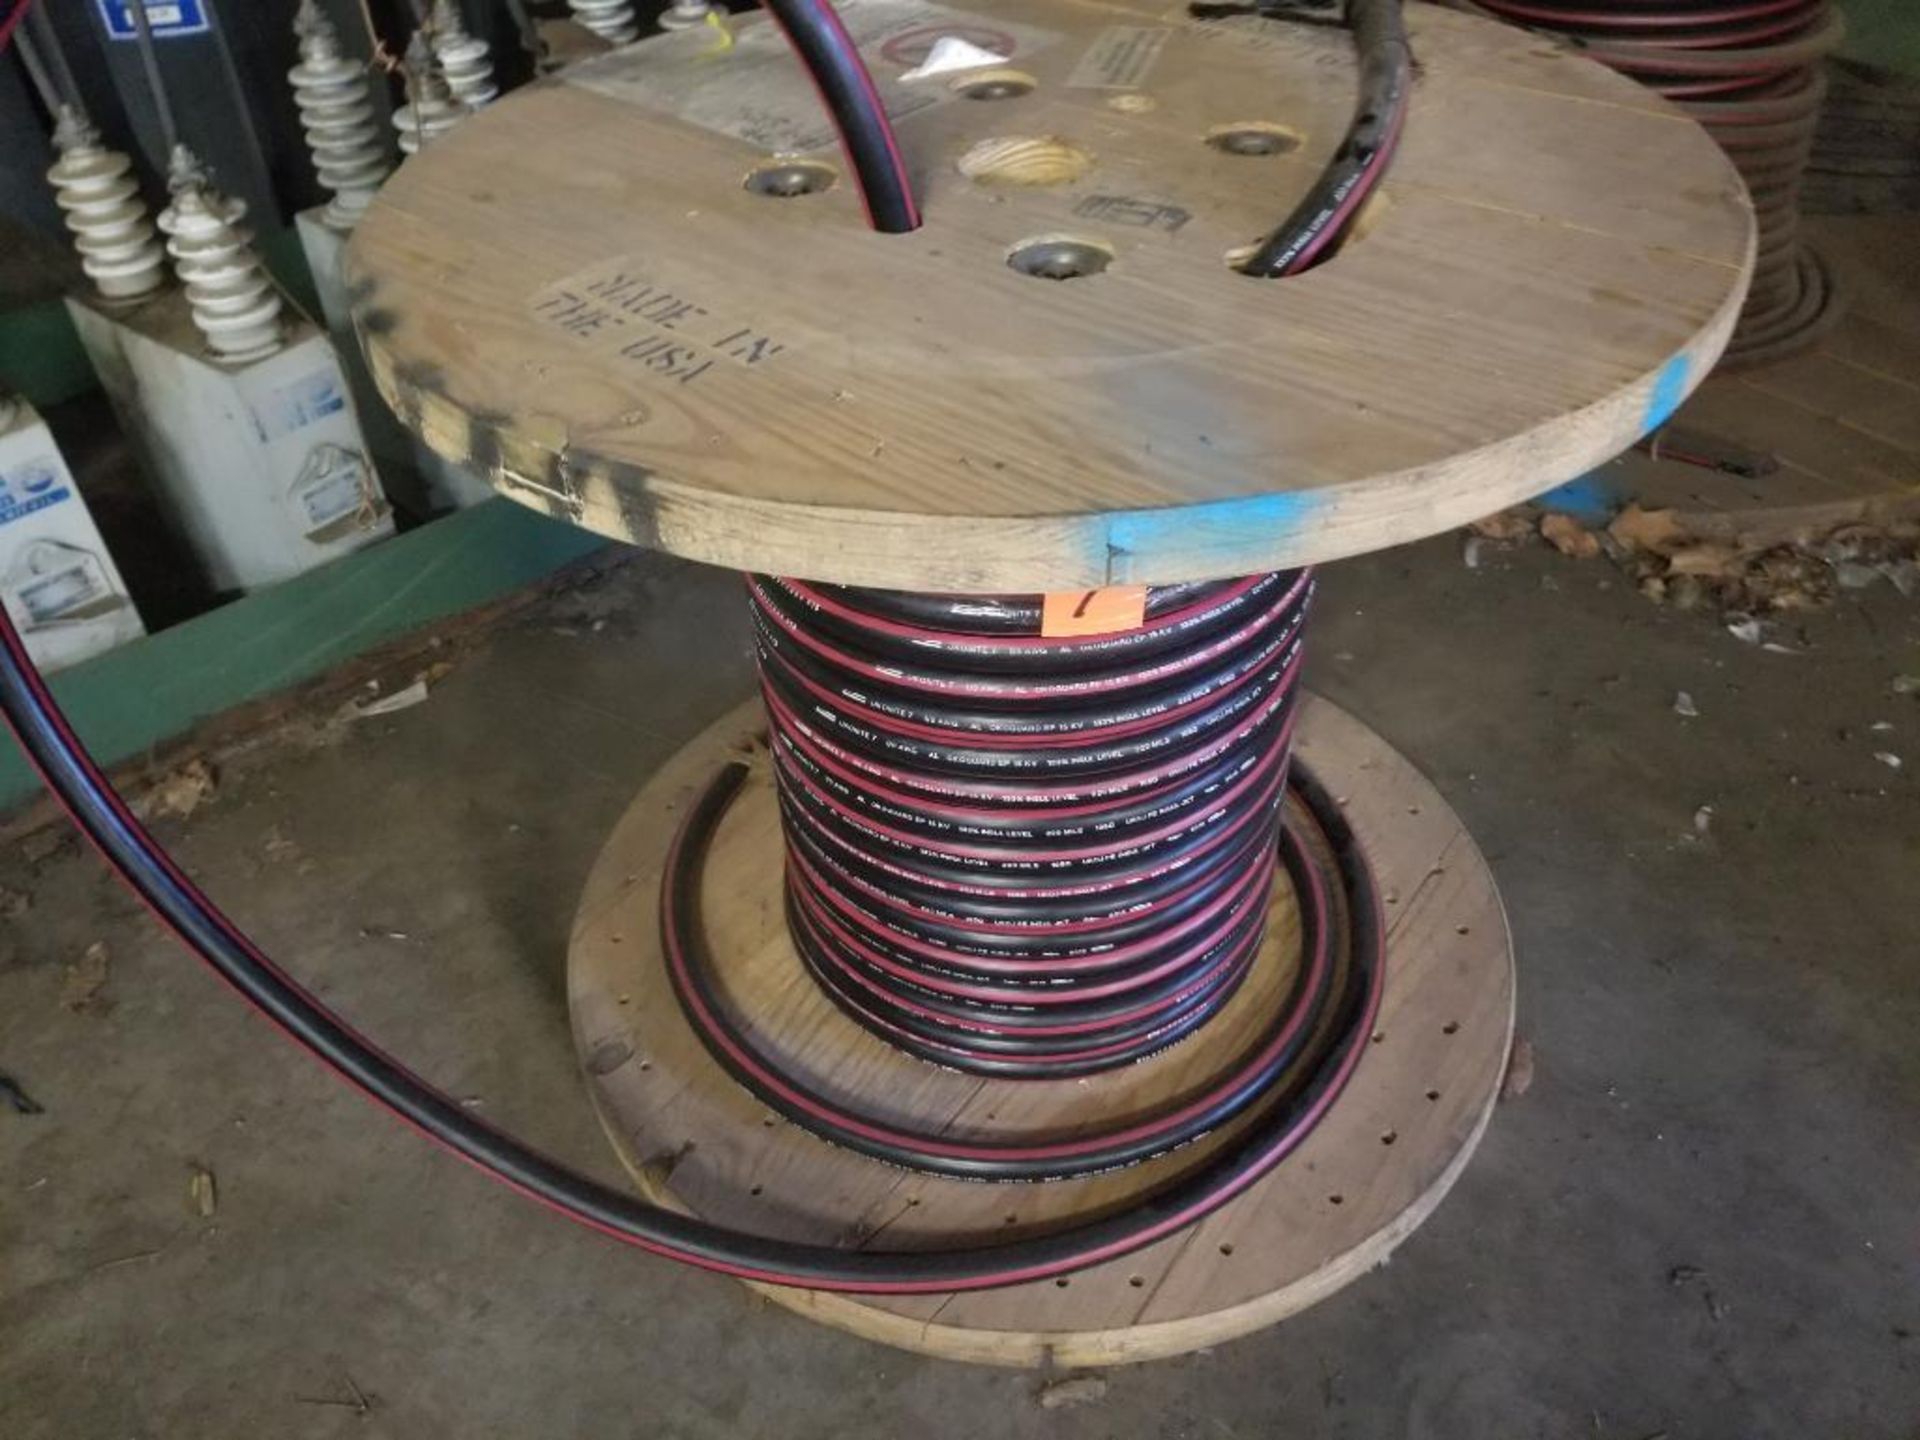 Spool of 15kV Okonite Okoguard wire . Model EPR-SC220-030. 15kV. Catalog 161-23-3072.